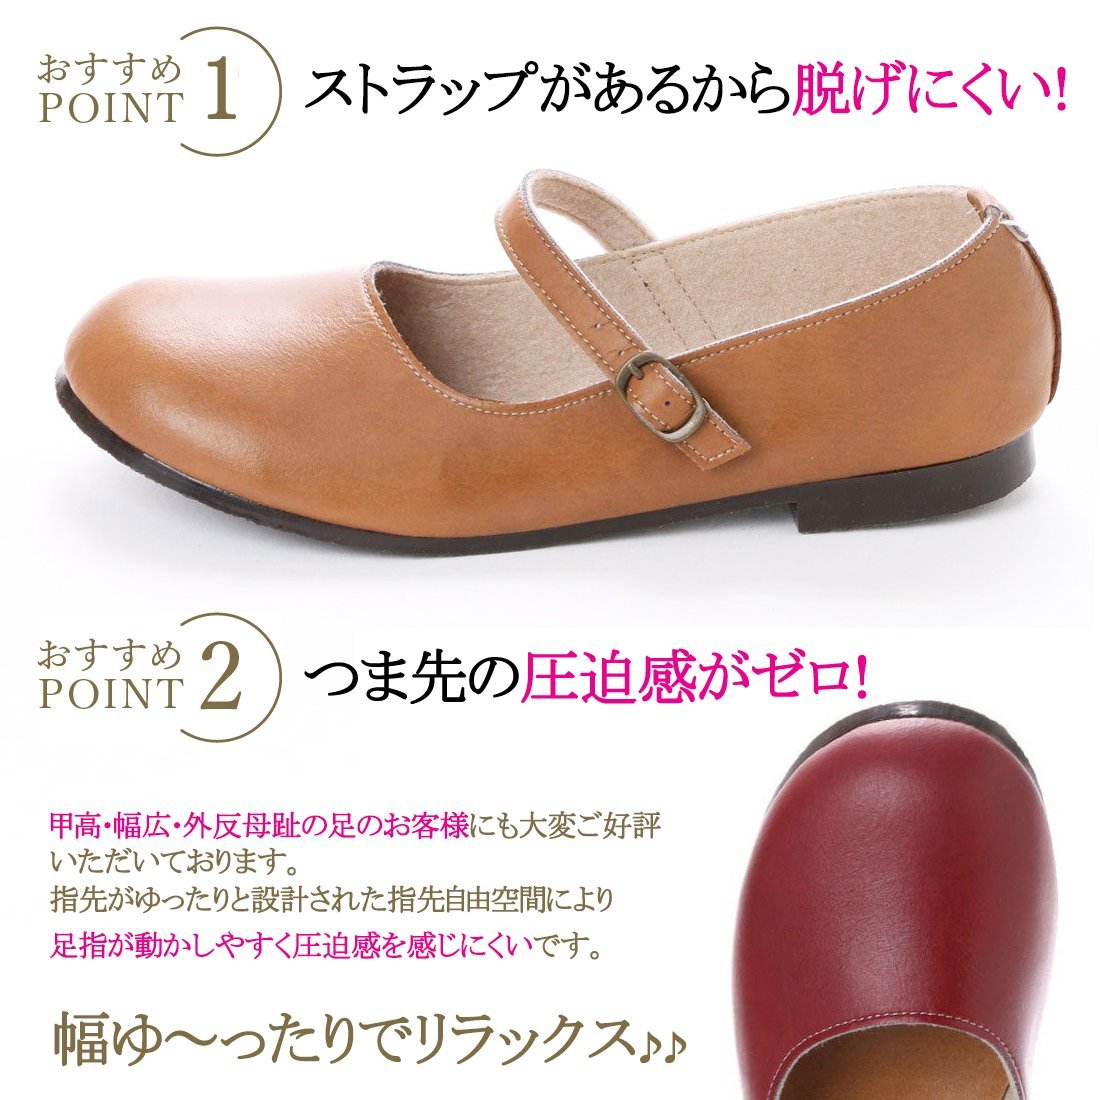 43lk бесплатная доставка по всей стране (26~26.5cm) сделано в Японии one ремешок туфли-лодочки / темно-синий 